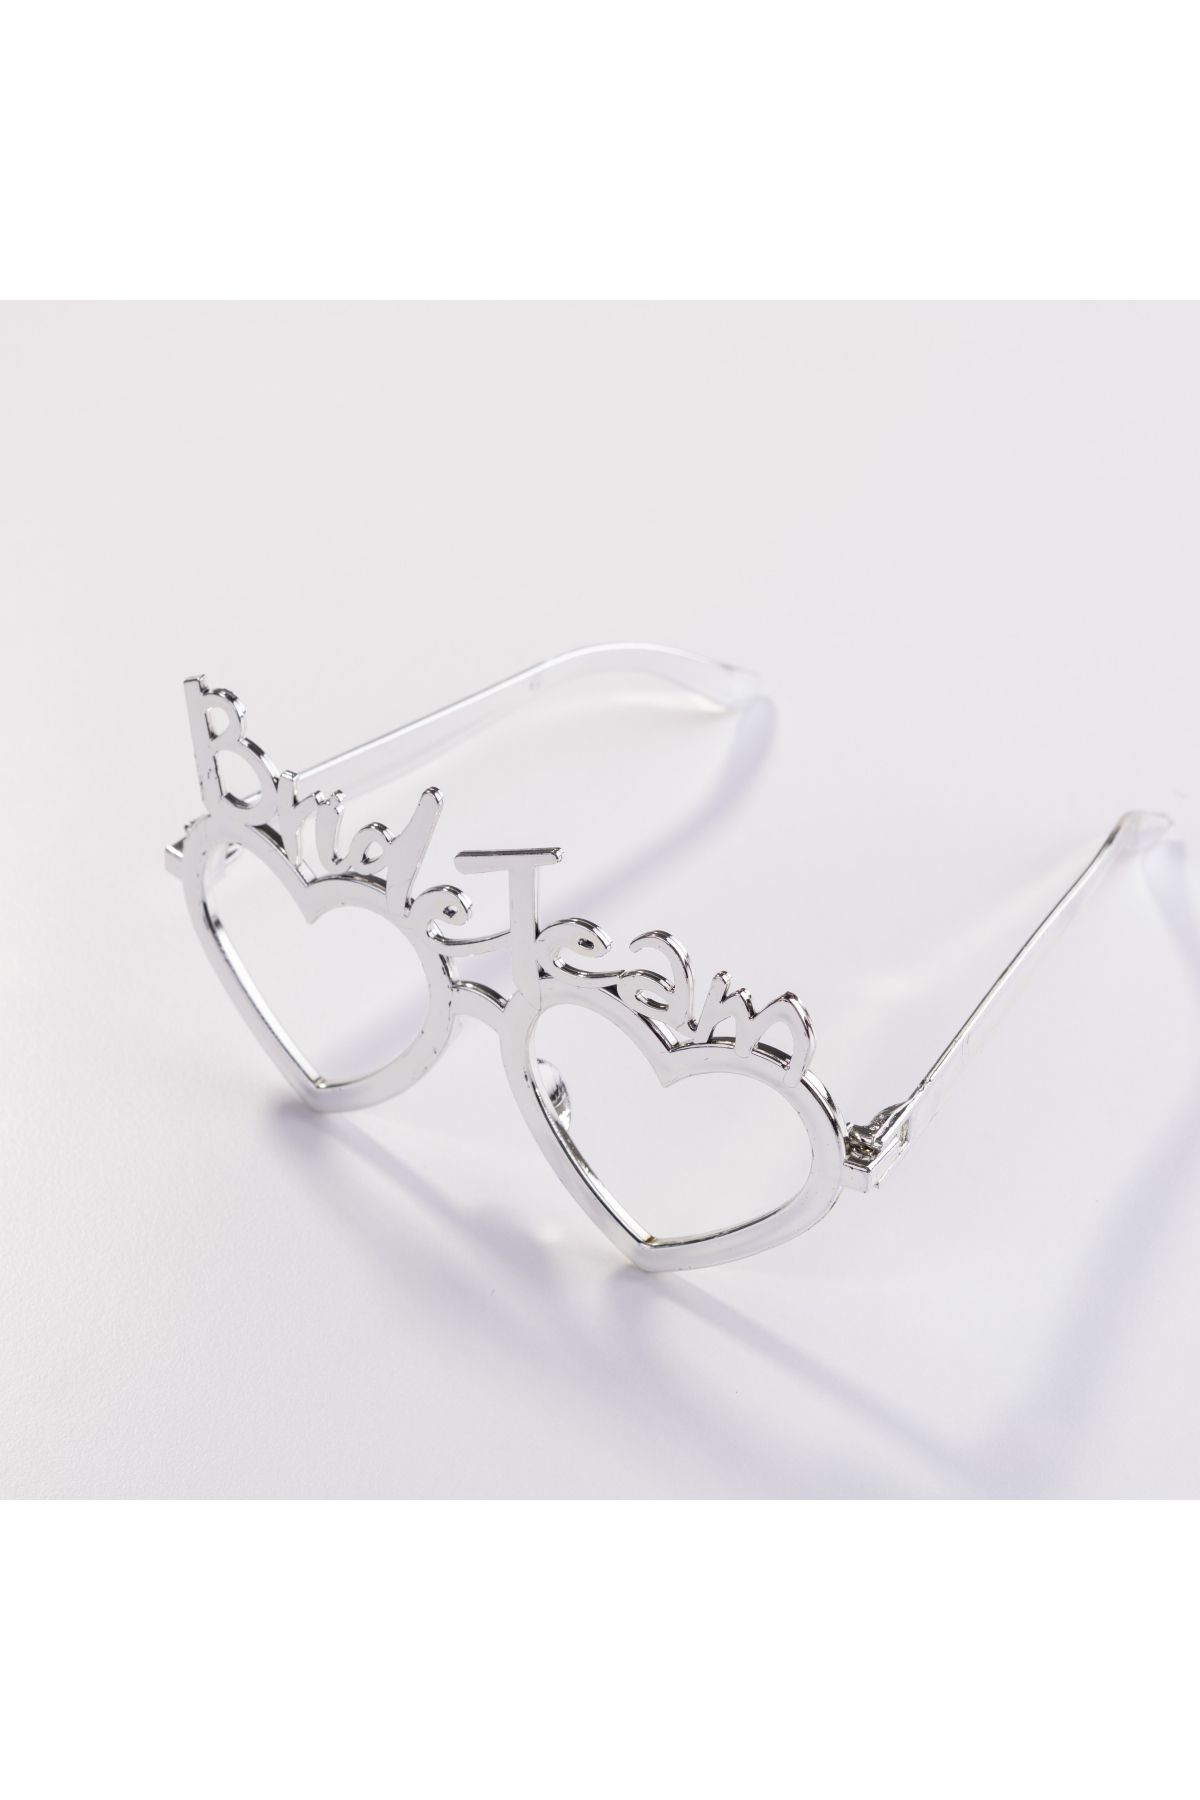 Bimotif Bride team yazılı kalpli 3lü parti gözlüğü, gri